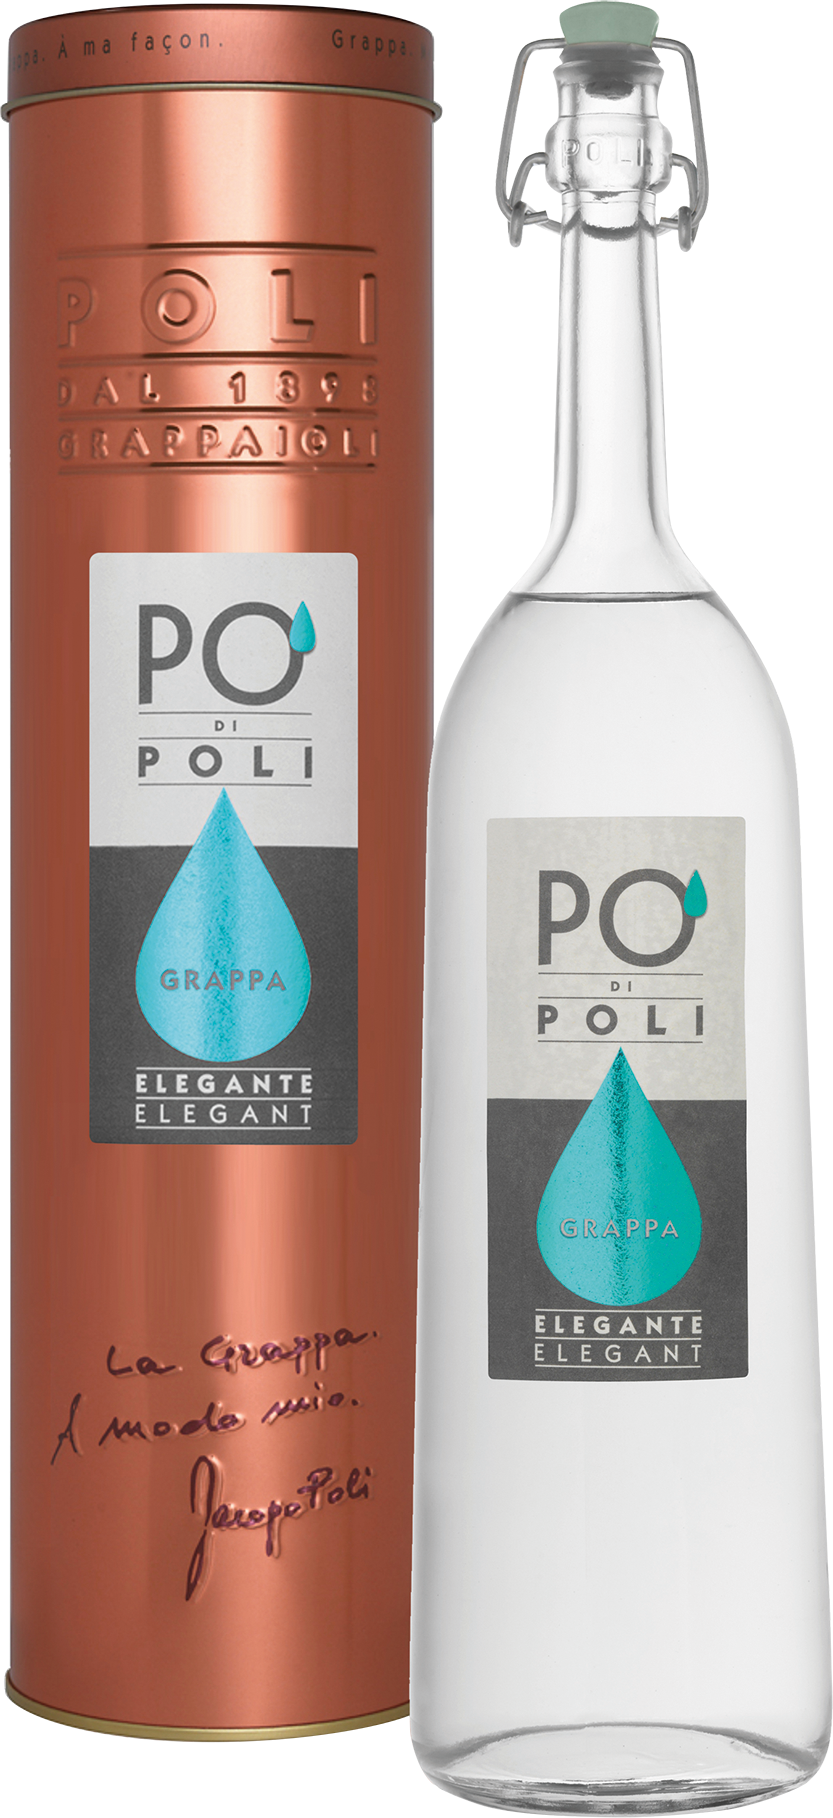 Jacopo Poli - Po' di Poli Elegante (Pinot)